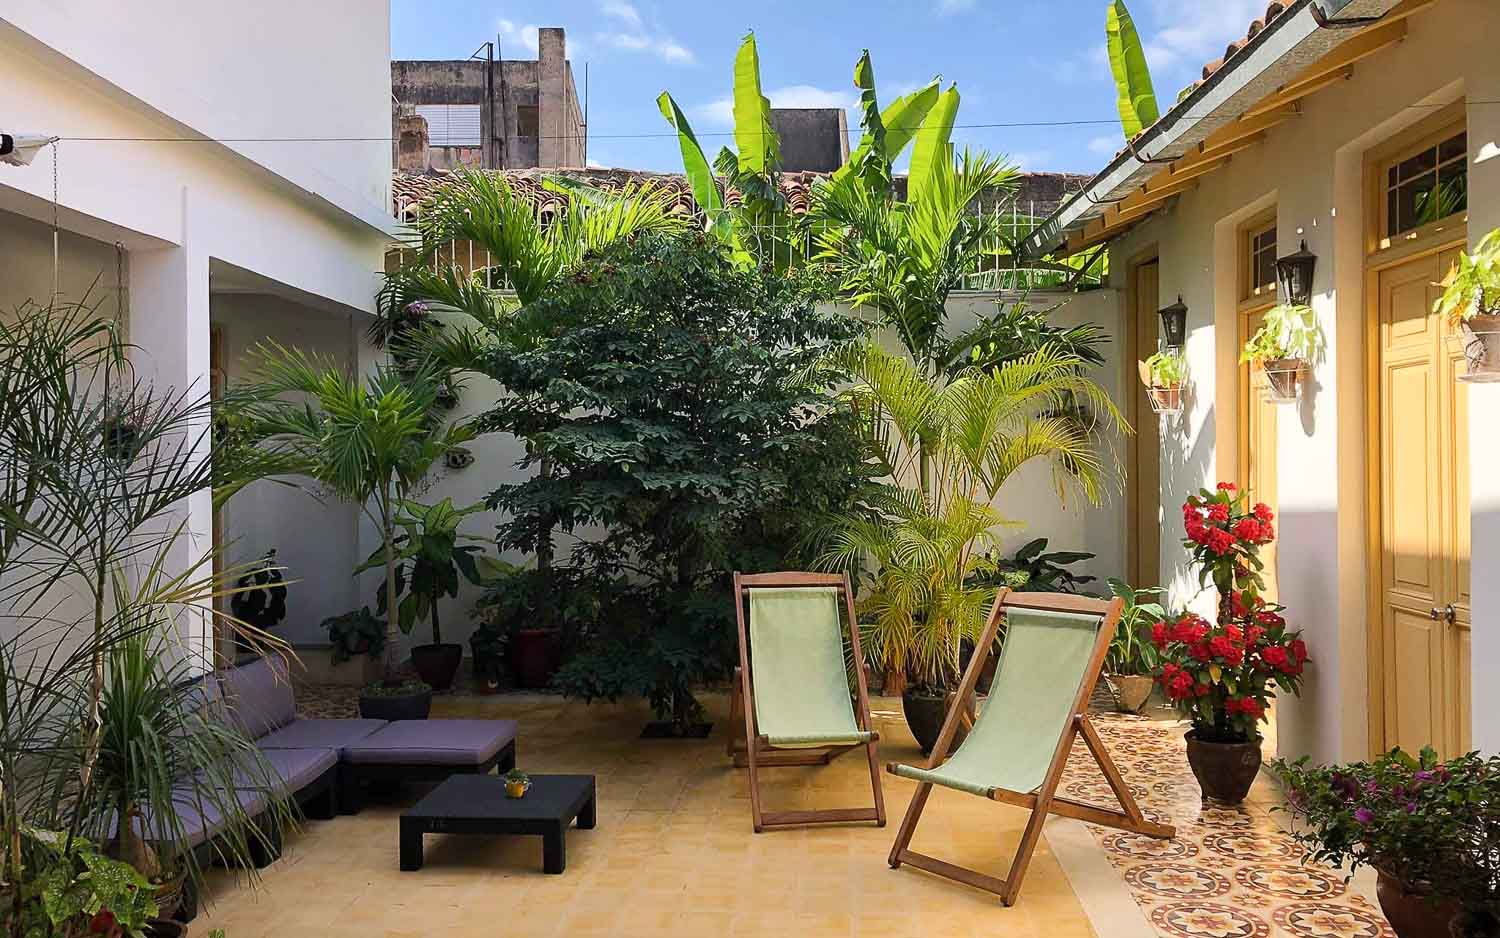 Unser Patio ist eine grüne Oase der Ruhe in unserem Casaparticular in Camagüey